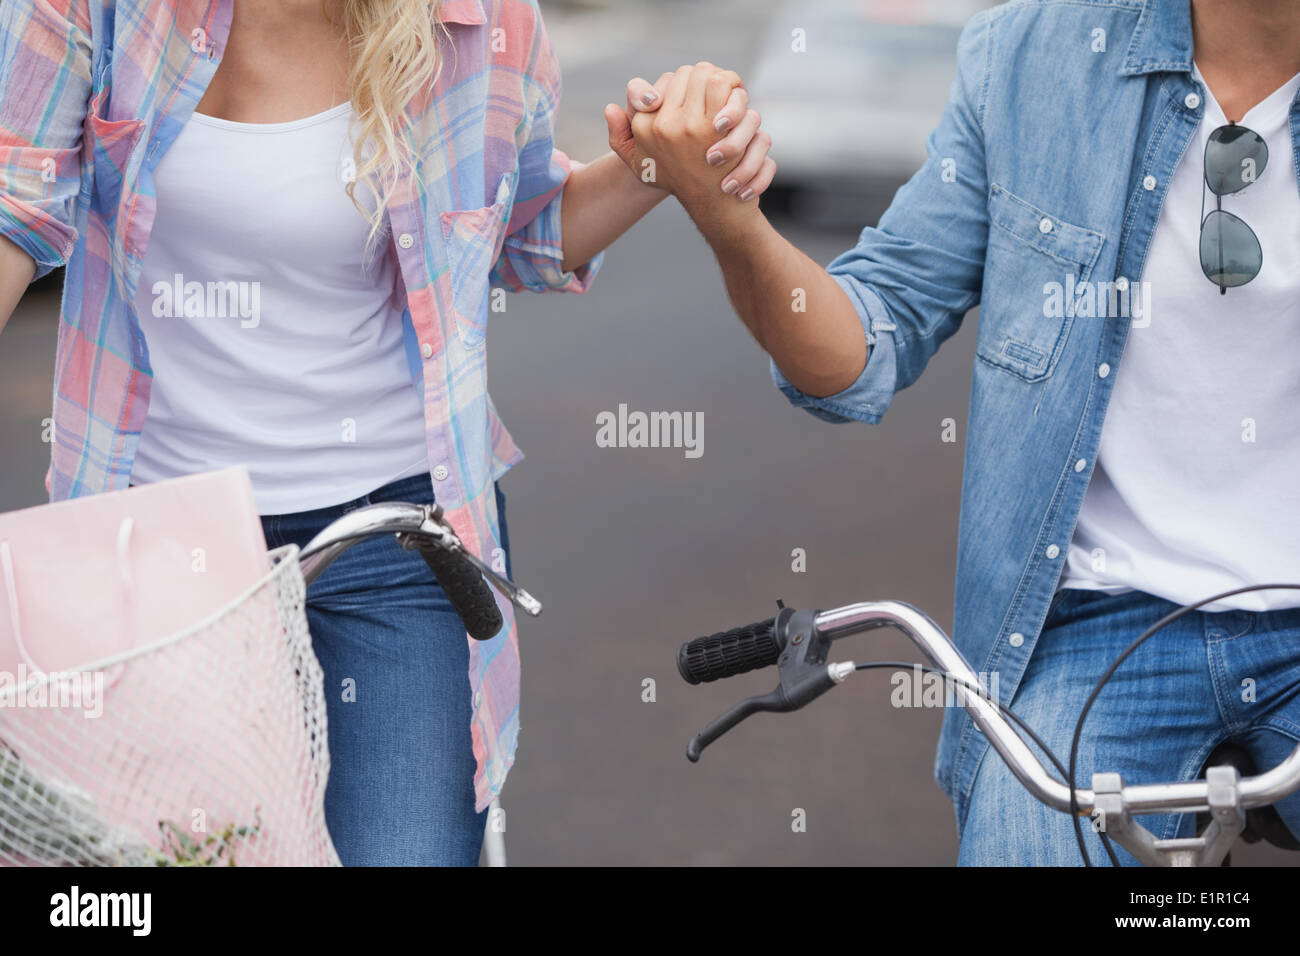 Jeune couple de la hanche aller pour une promenade à vélo Banque D'Images